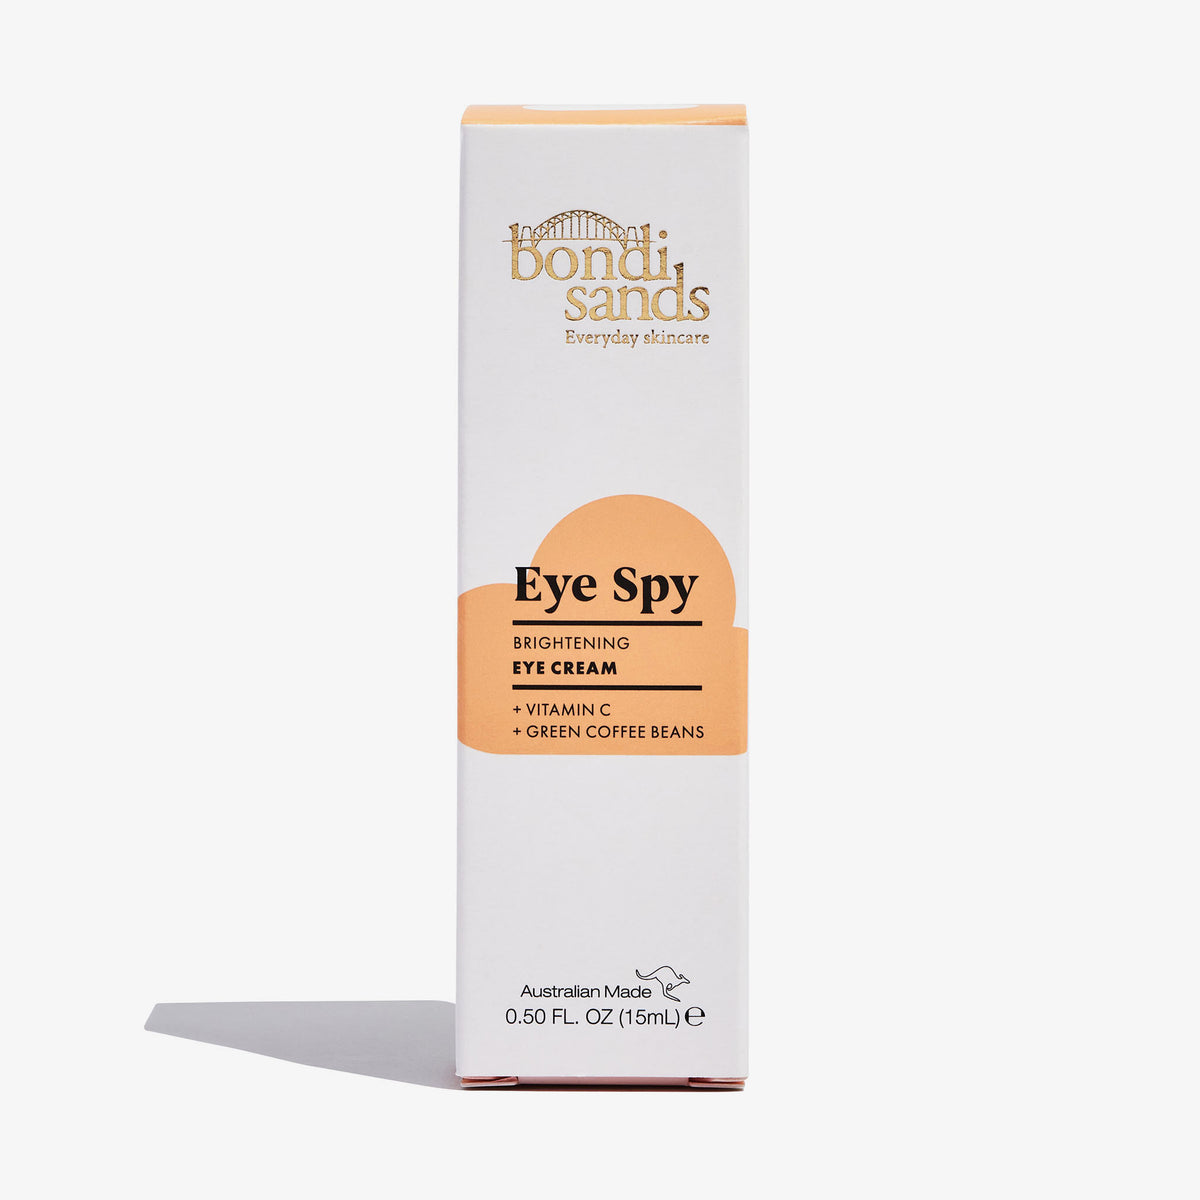 Bondi Sands | Eye Spy Vitamin C Eye Cream